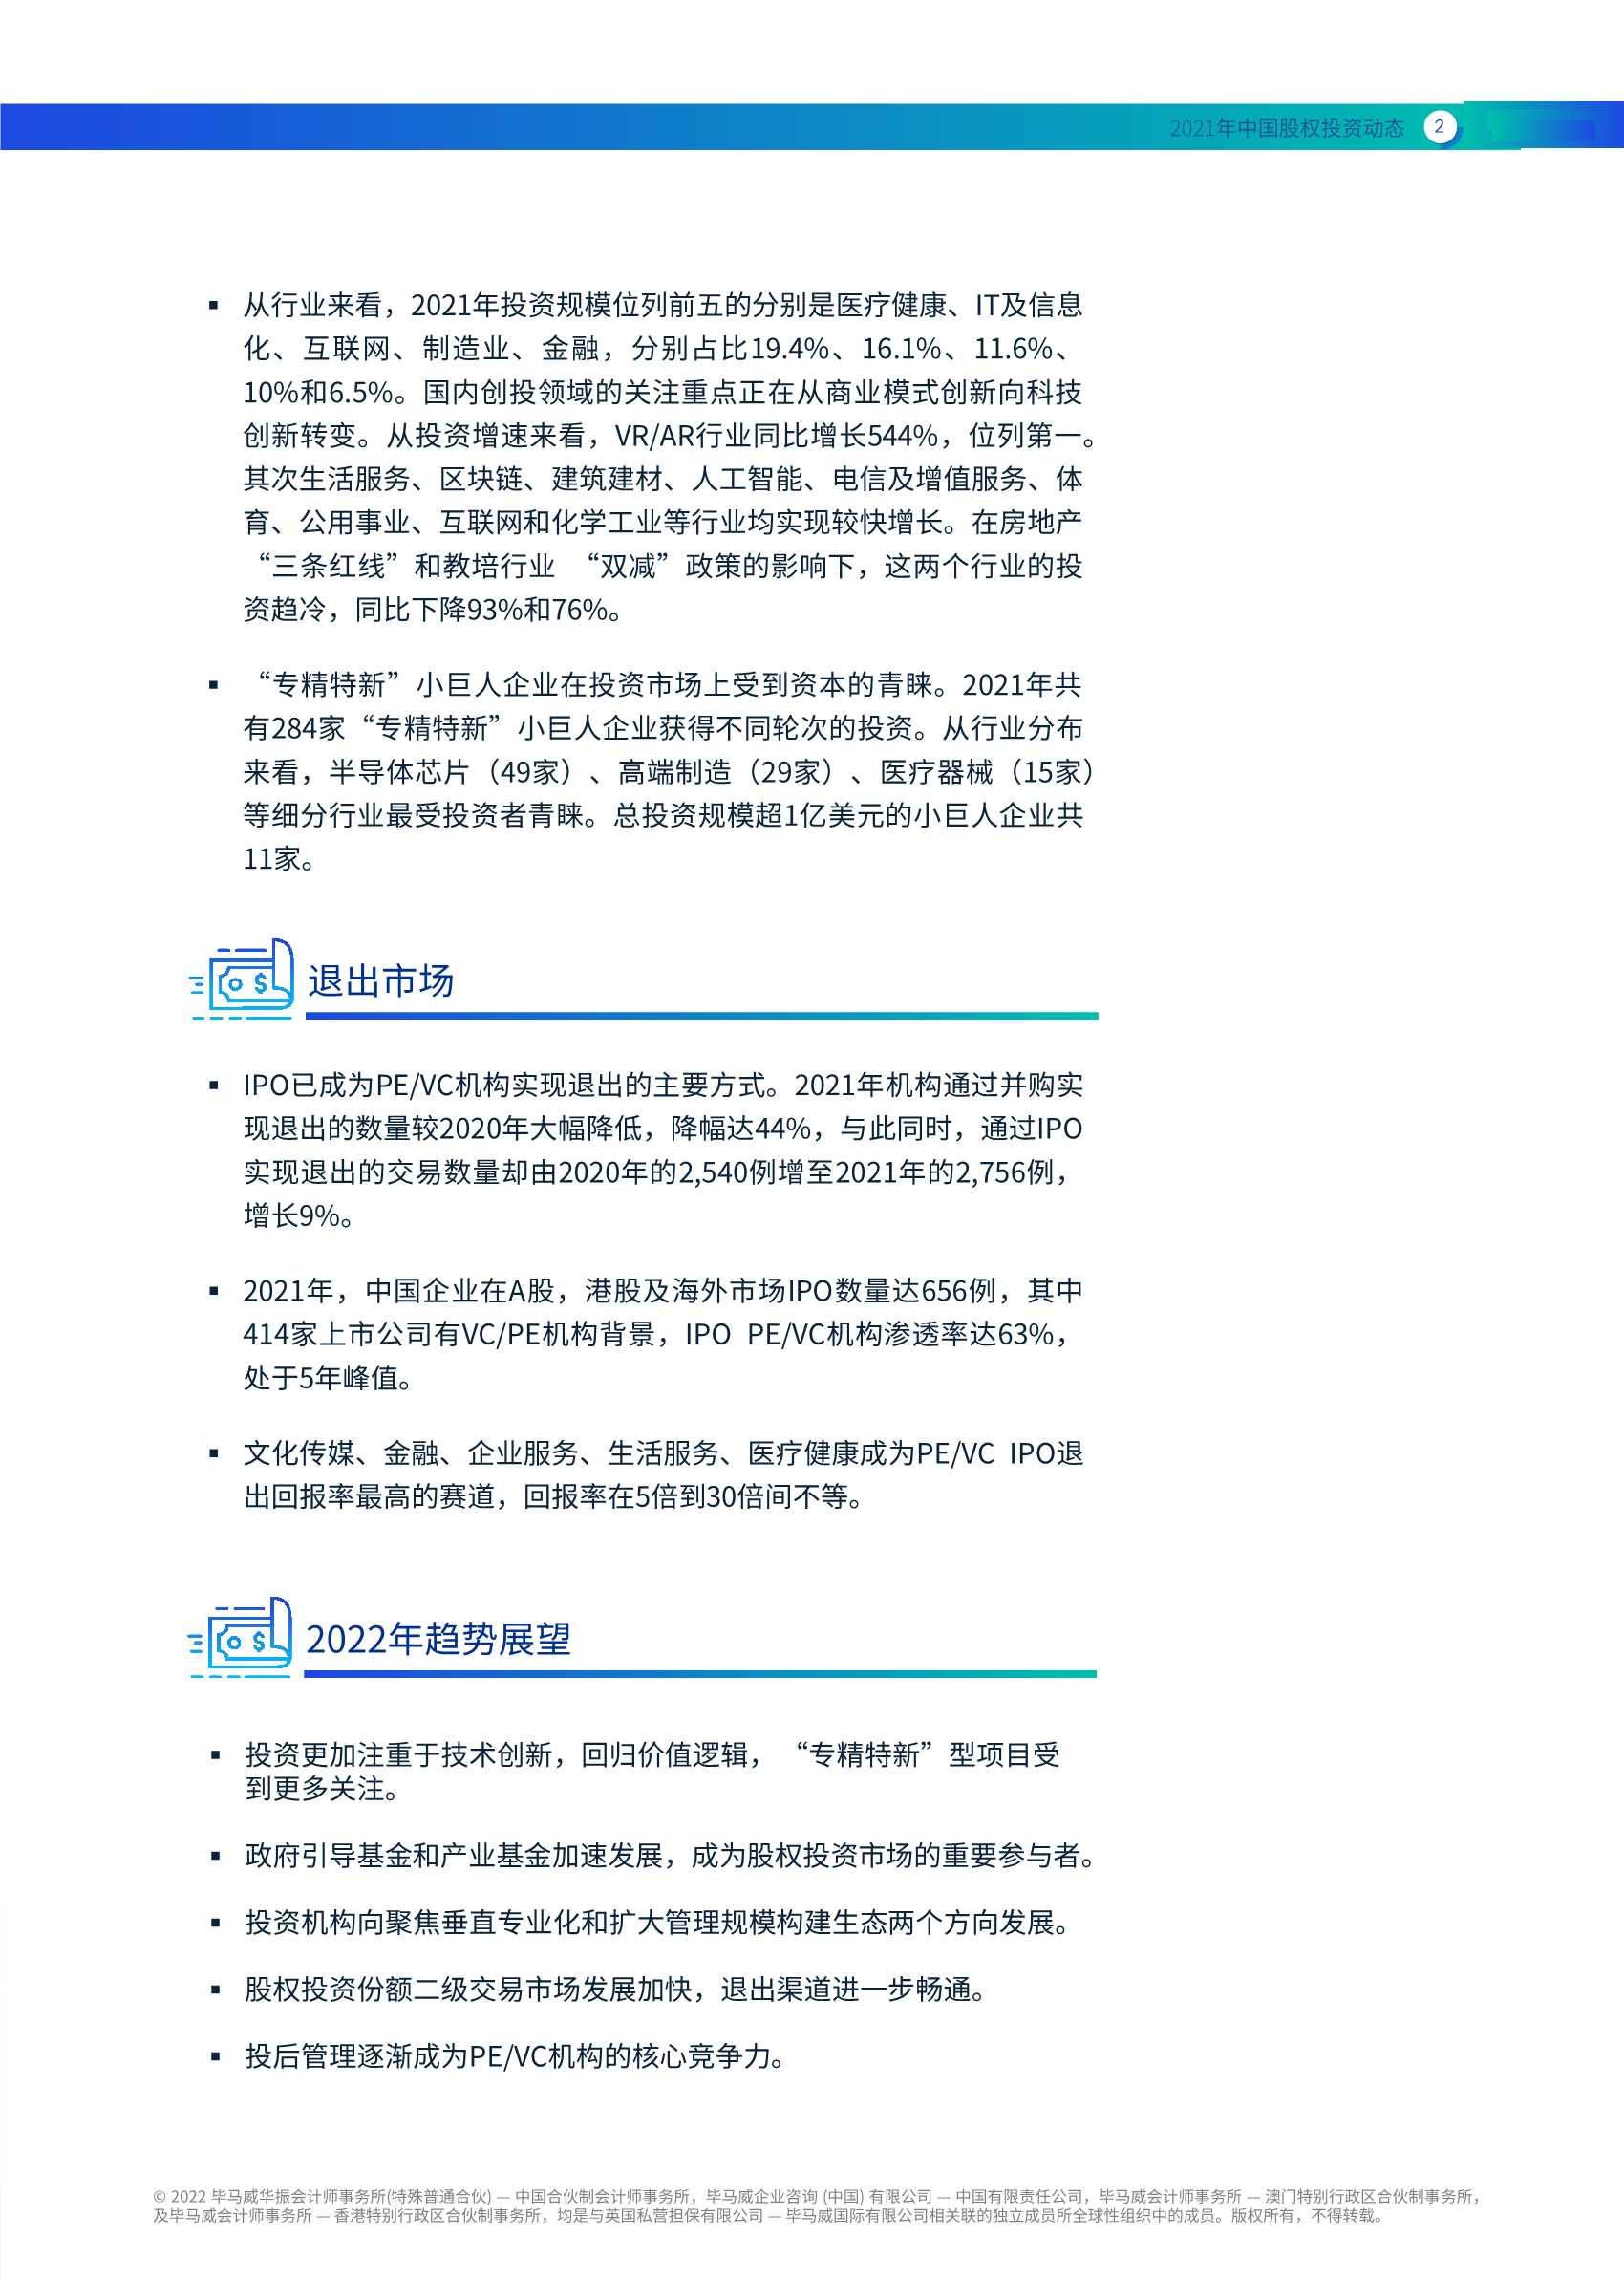 毕马威-2021年中国股权投资动态-2022.04-34页